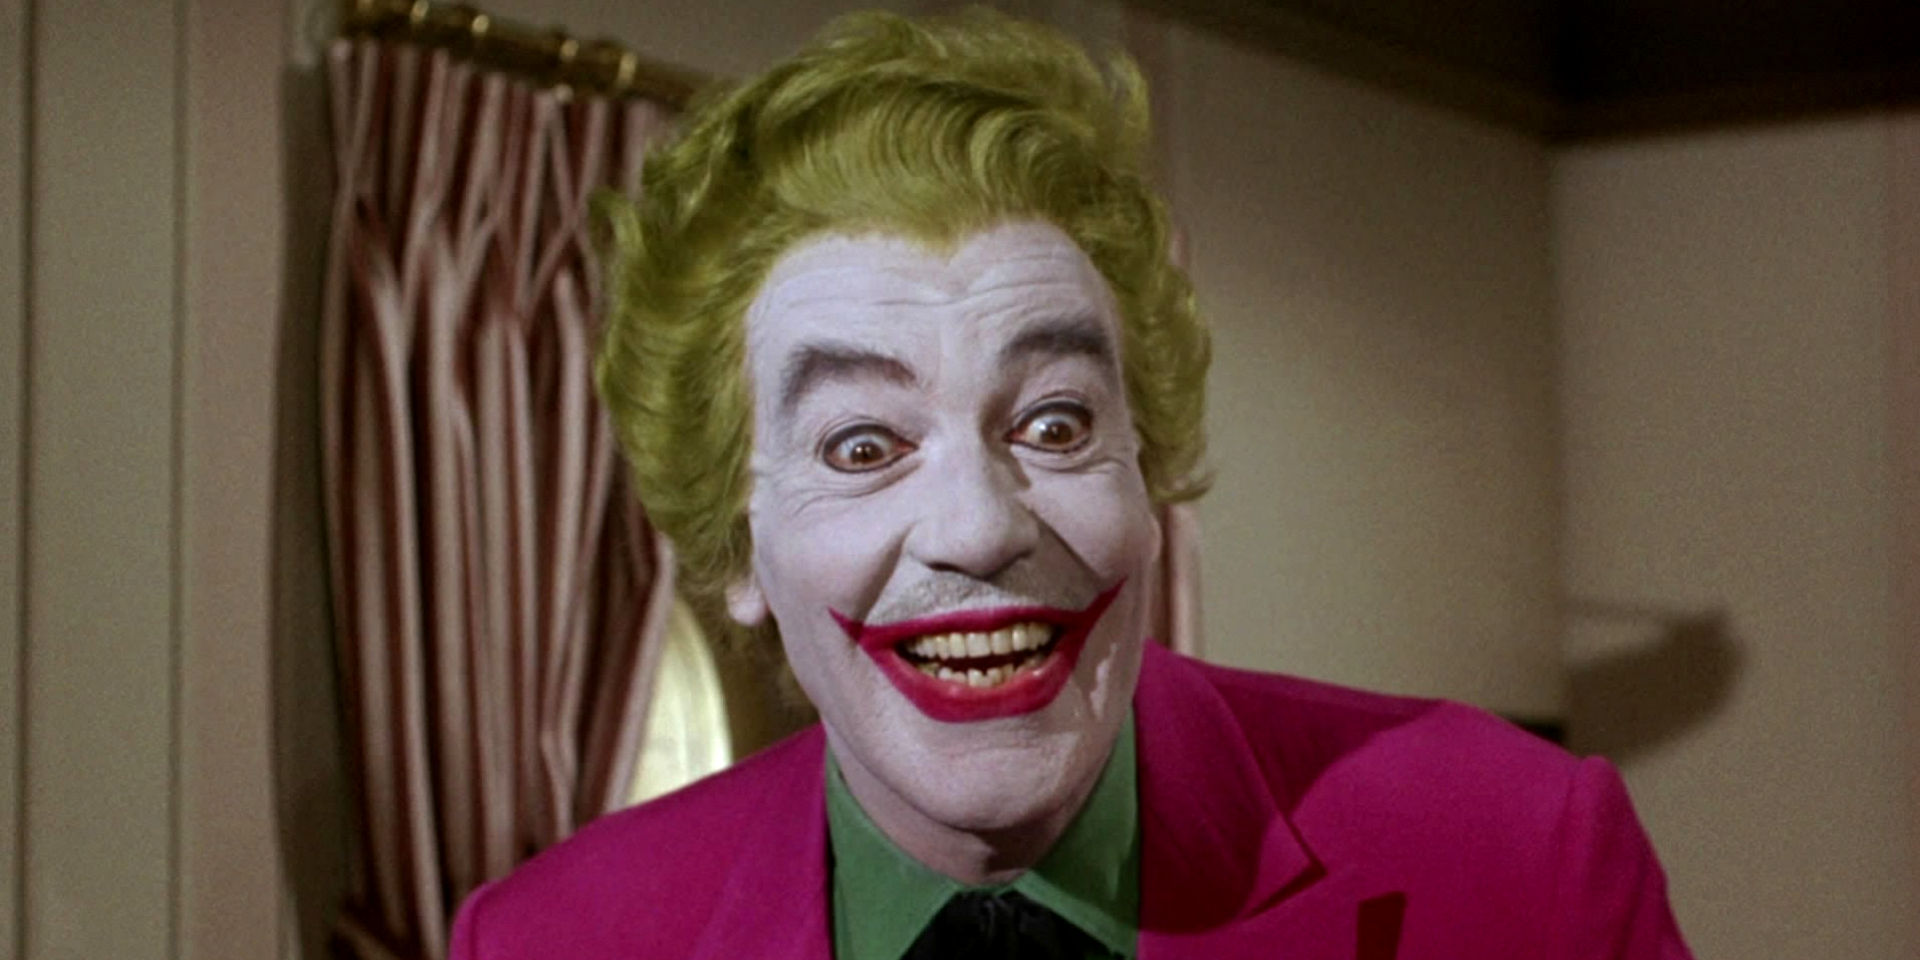 La strana storia dei baffi del Joker